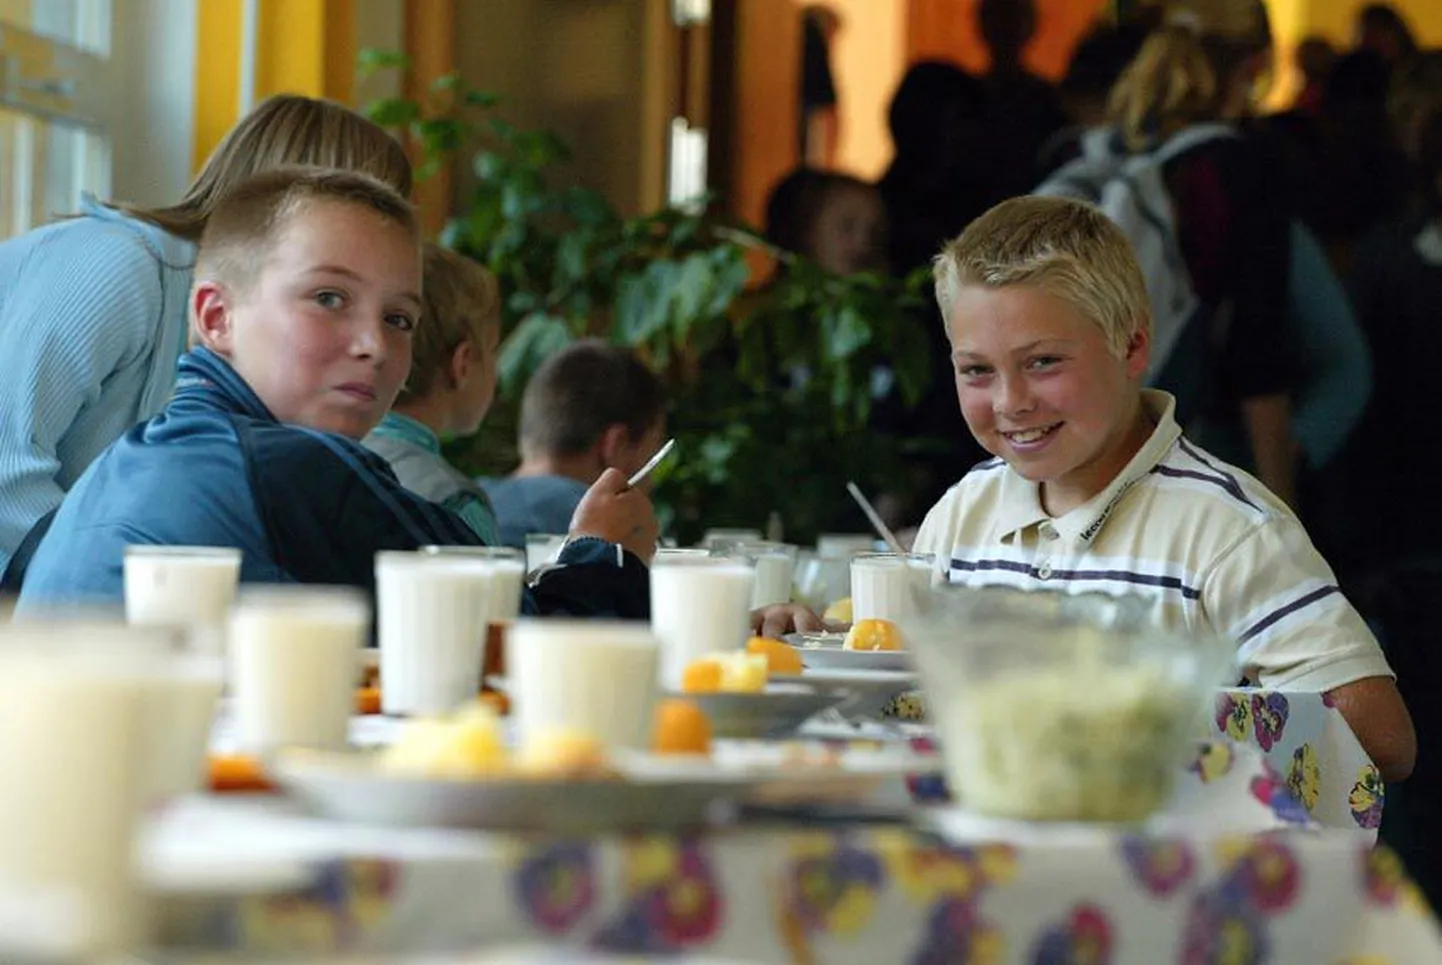 Rakvere reaalgümnaasiumi V klassi poisid Reimo Eskor (vasakul) ja Taavi Mesi kiidavad koolitoidu juurde kuuluvat keefirit. Mullu jõid nad mõnuga koolipiima - jogurtit.